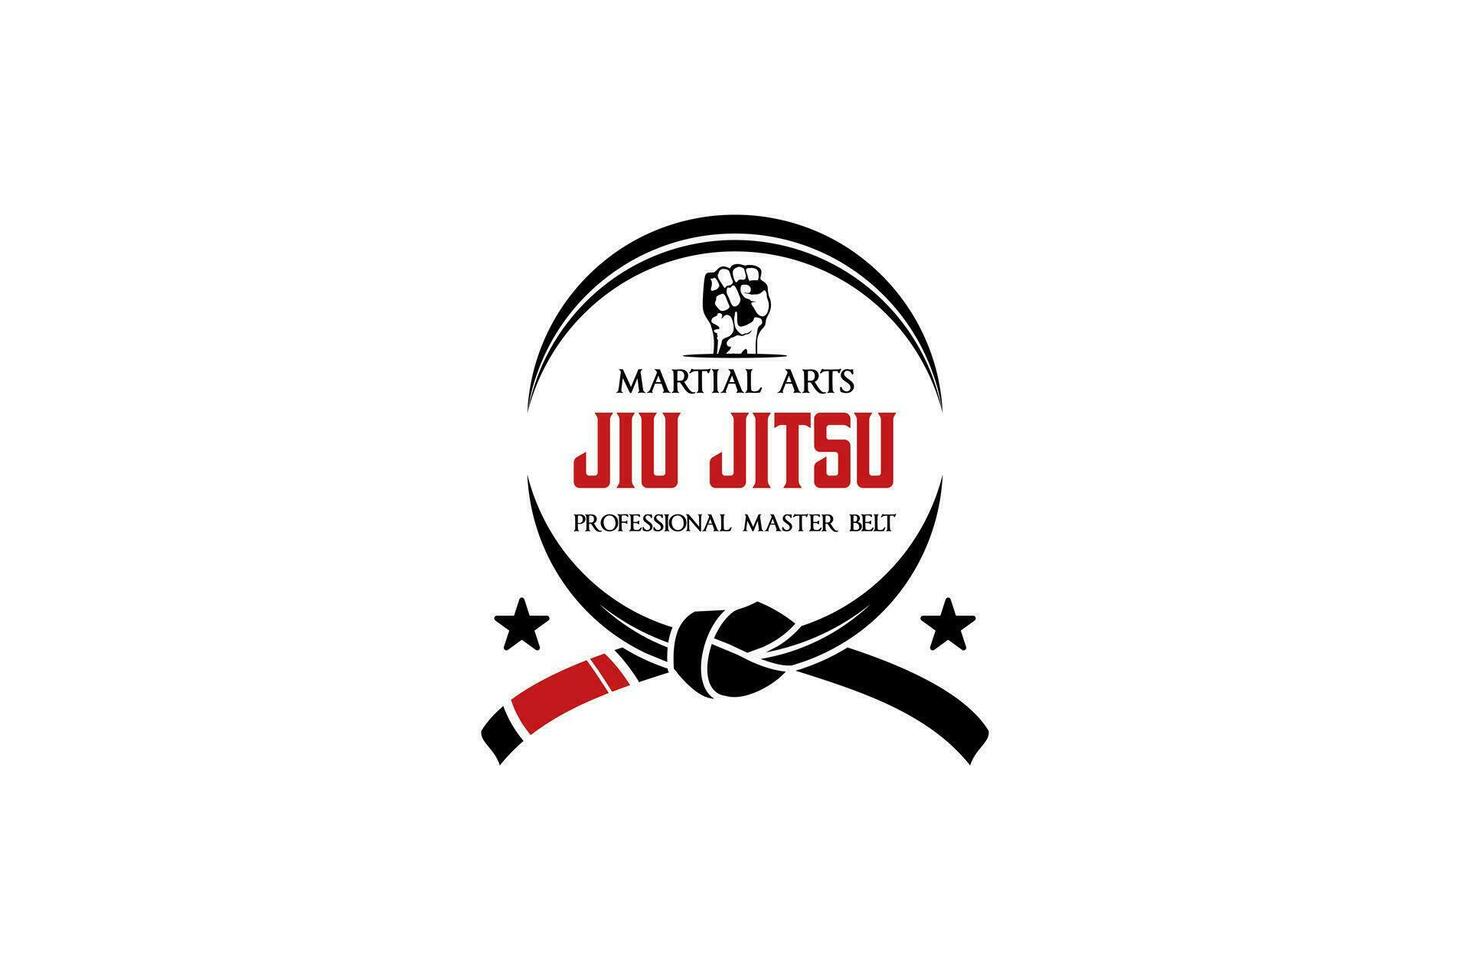 Circular jiu jitsu martial arts belt logo design for mixed martial arts academy or school logo vector